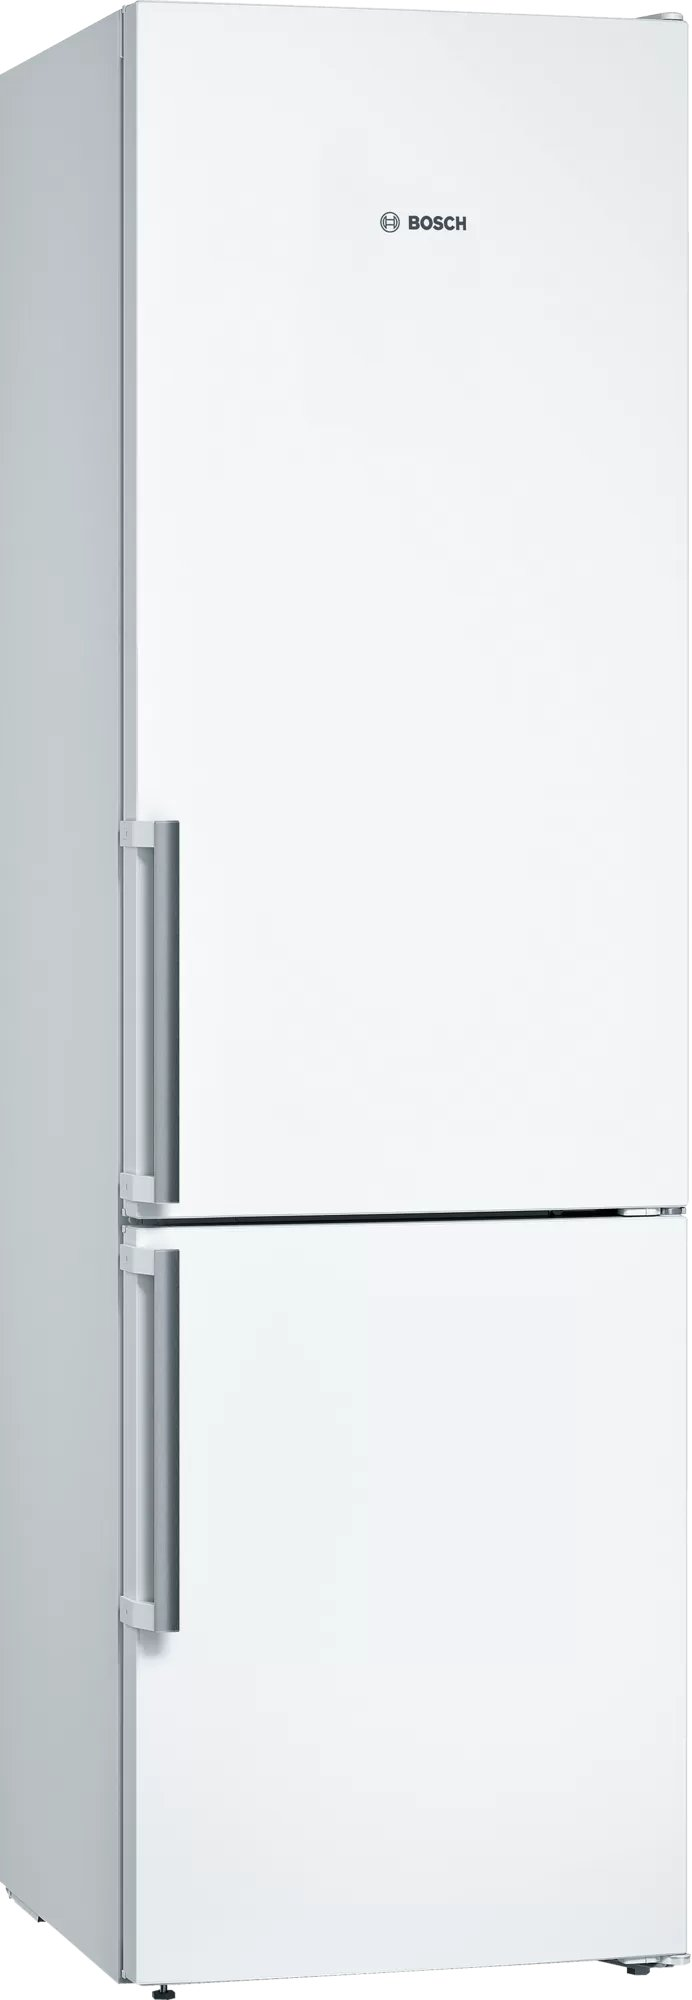 Холодильник Bosch KGN39VWEQ белый холодильник bosch